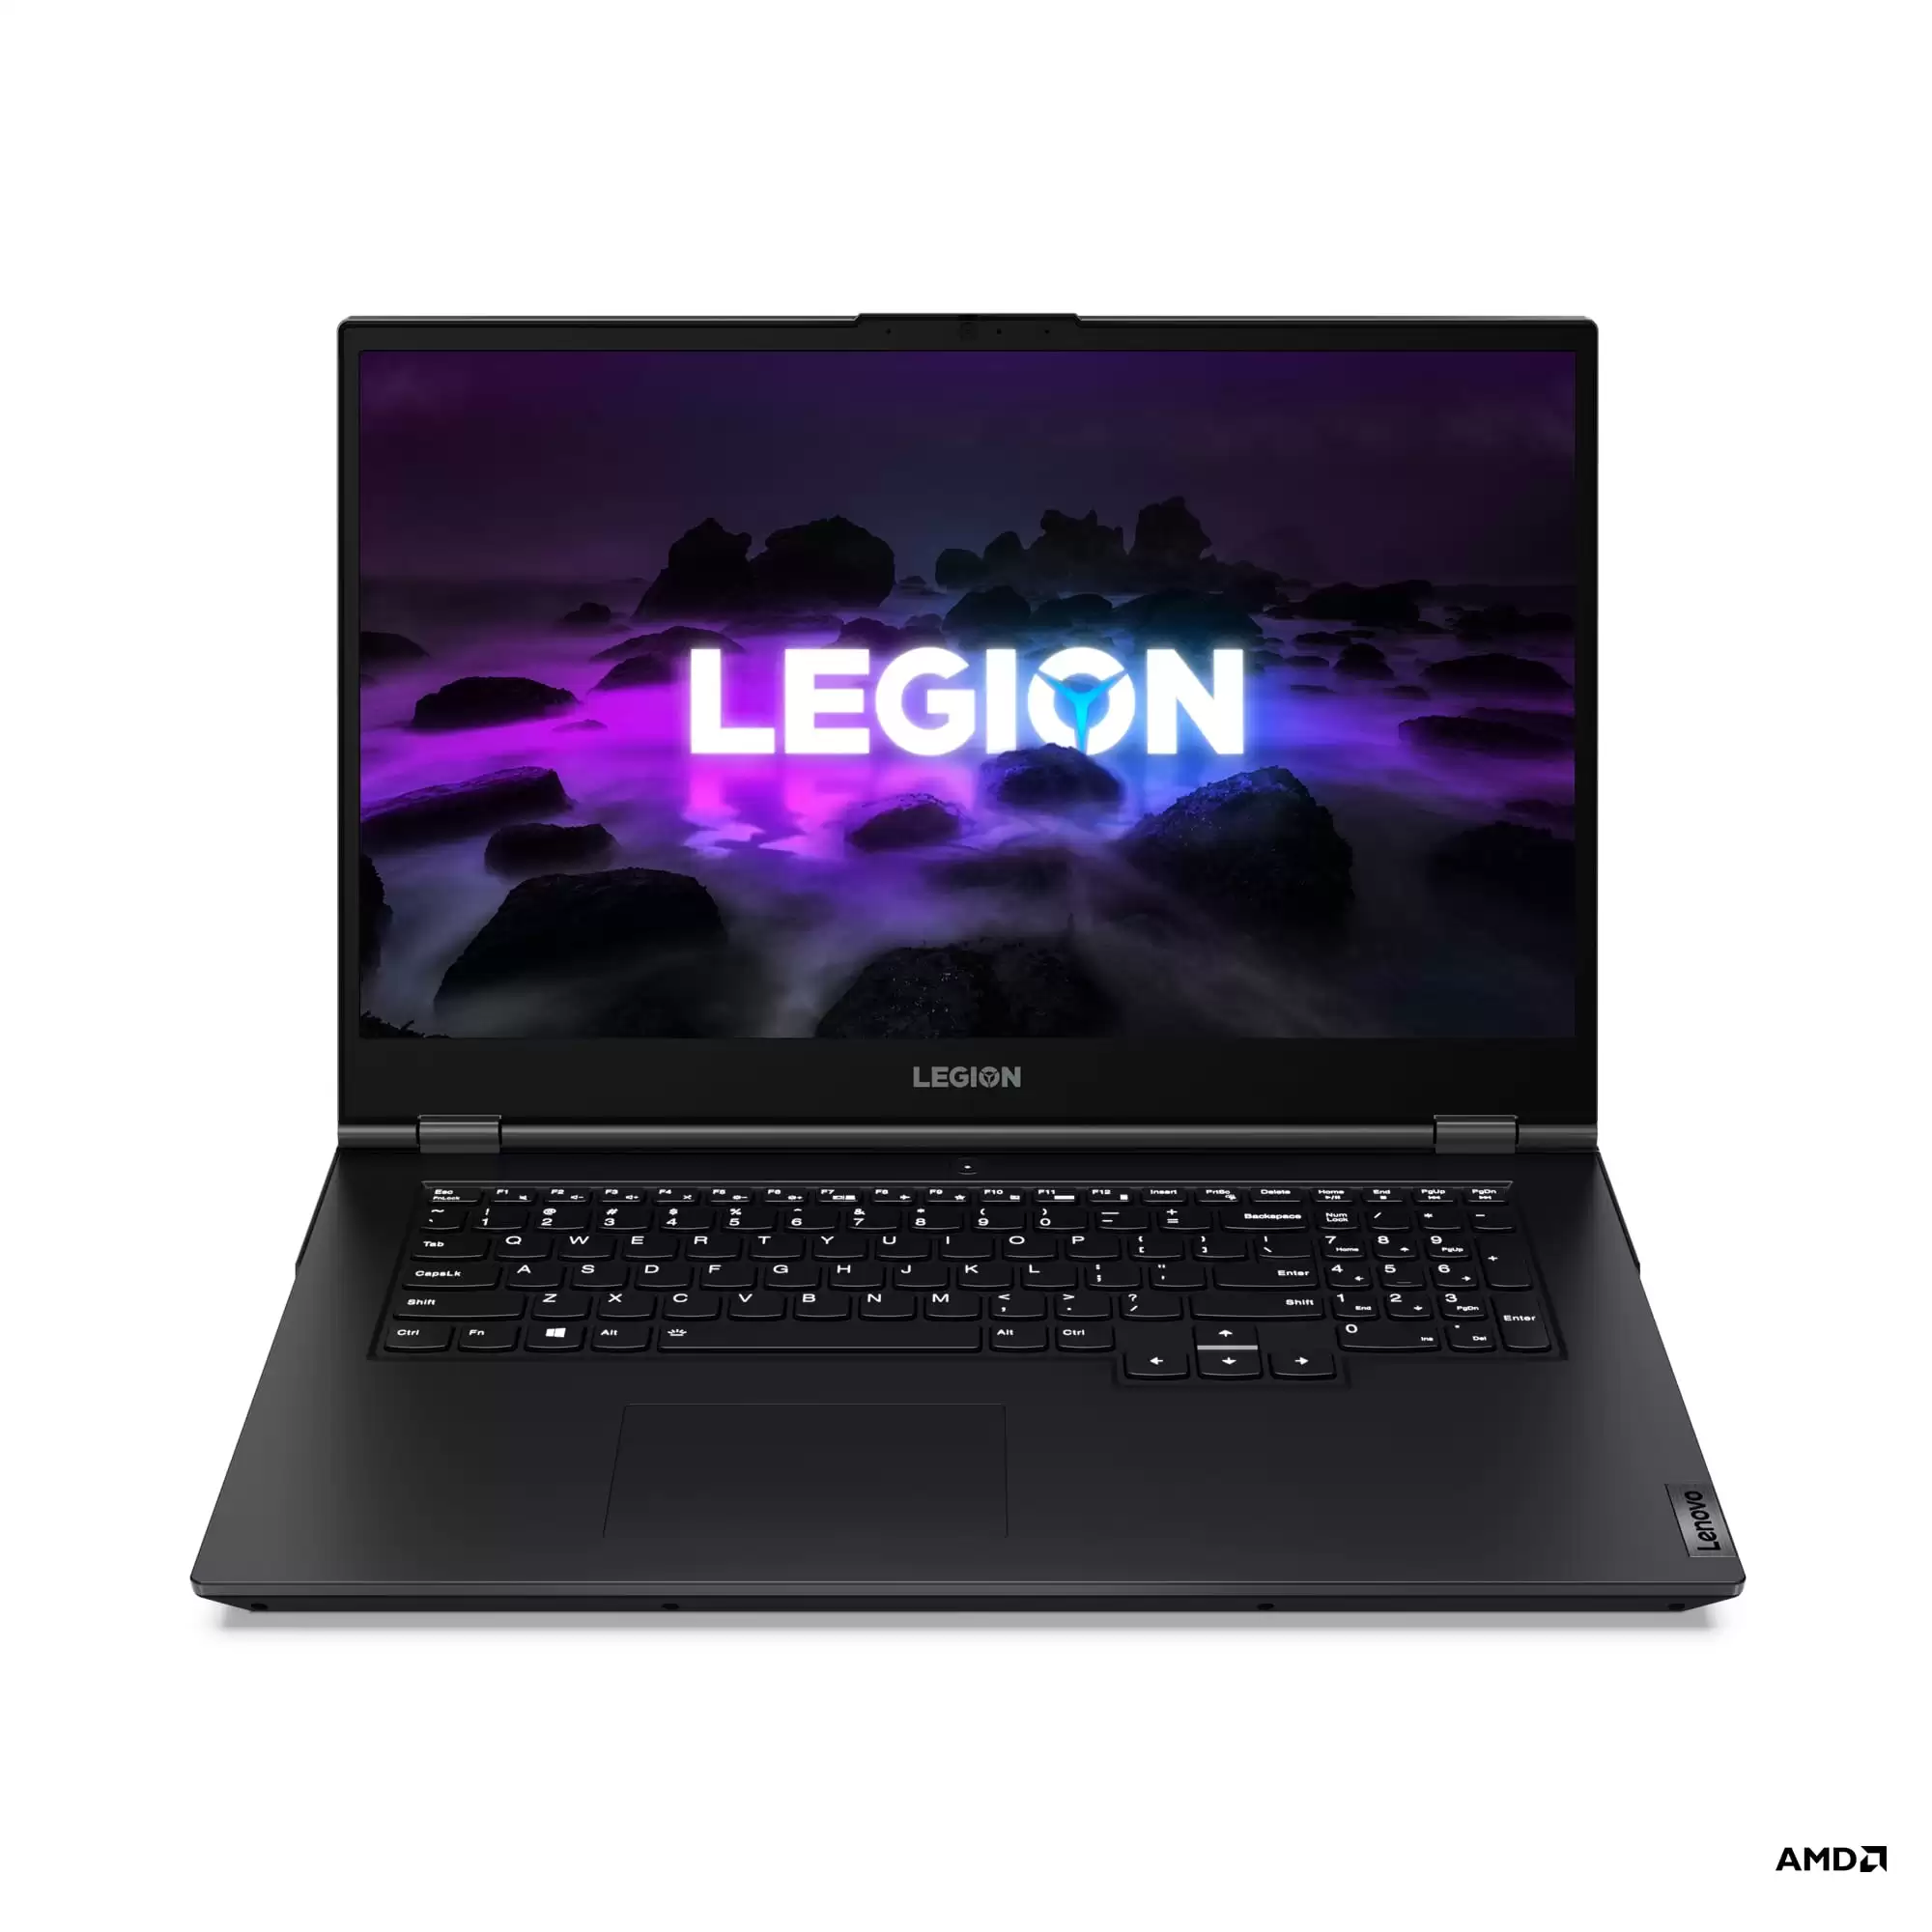 Legion 5 17 inch 5 | Legion 5 Pro | เปิดตัว Lenovo Legion ไลน์อัพใหม่ล่าสุด ฟีเจอร์จัดเต็มเอาใจเกมเมอร์ยุค 2021